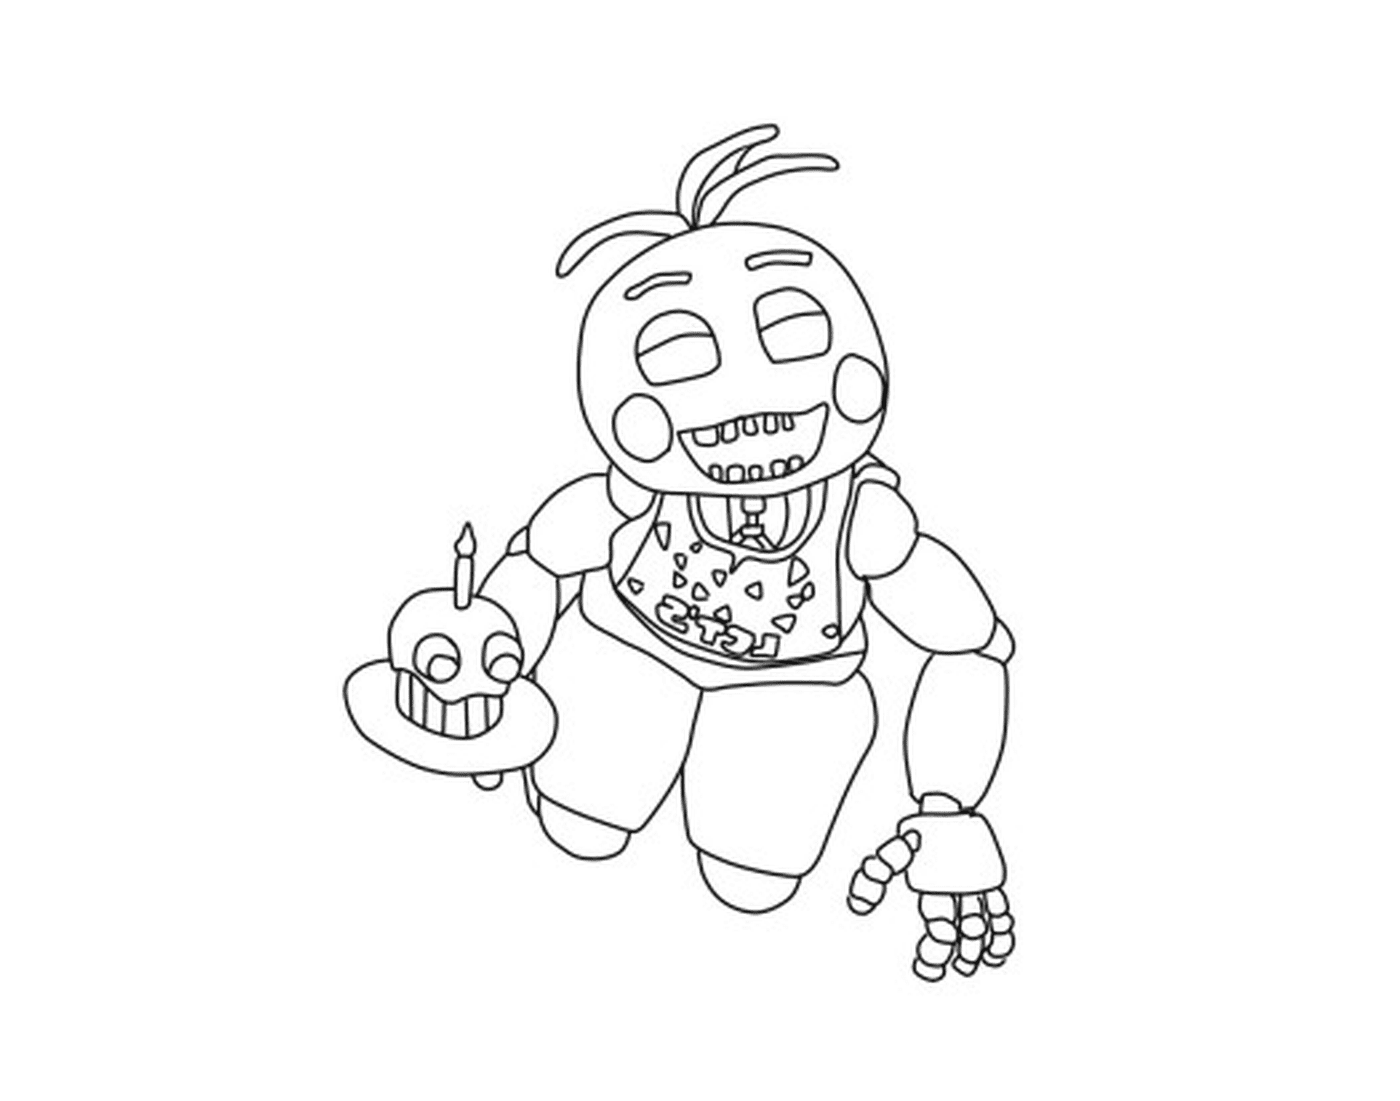  Um personagem com um cupcake 